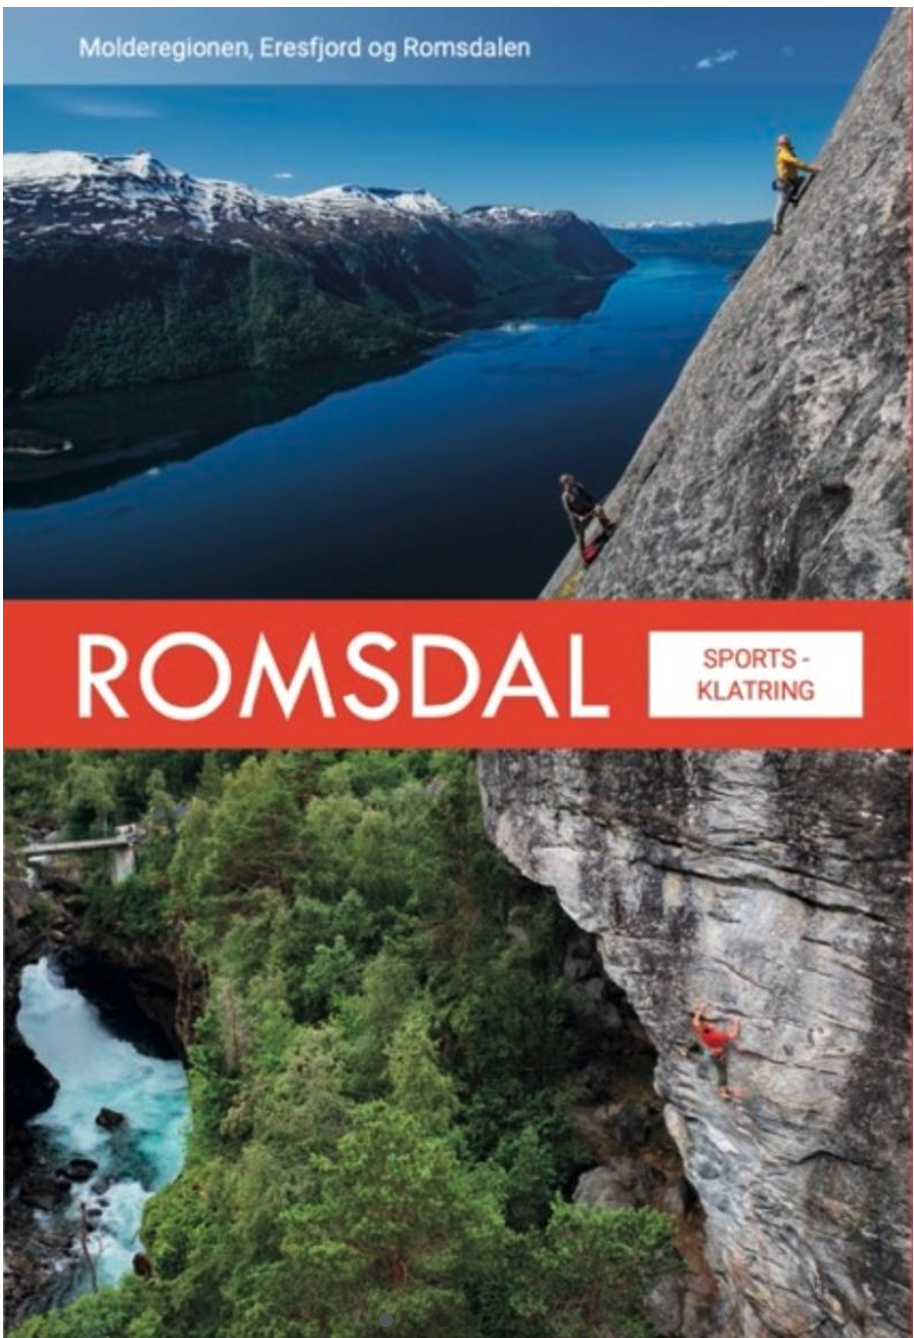 Romsdal Sportsklatring - klatring i Romsdal, Molde, Julsundet, Ravnfloget , Eresfjord og Romsdalen